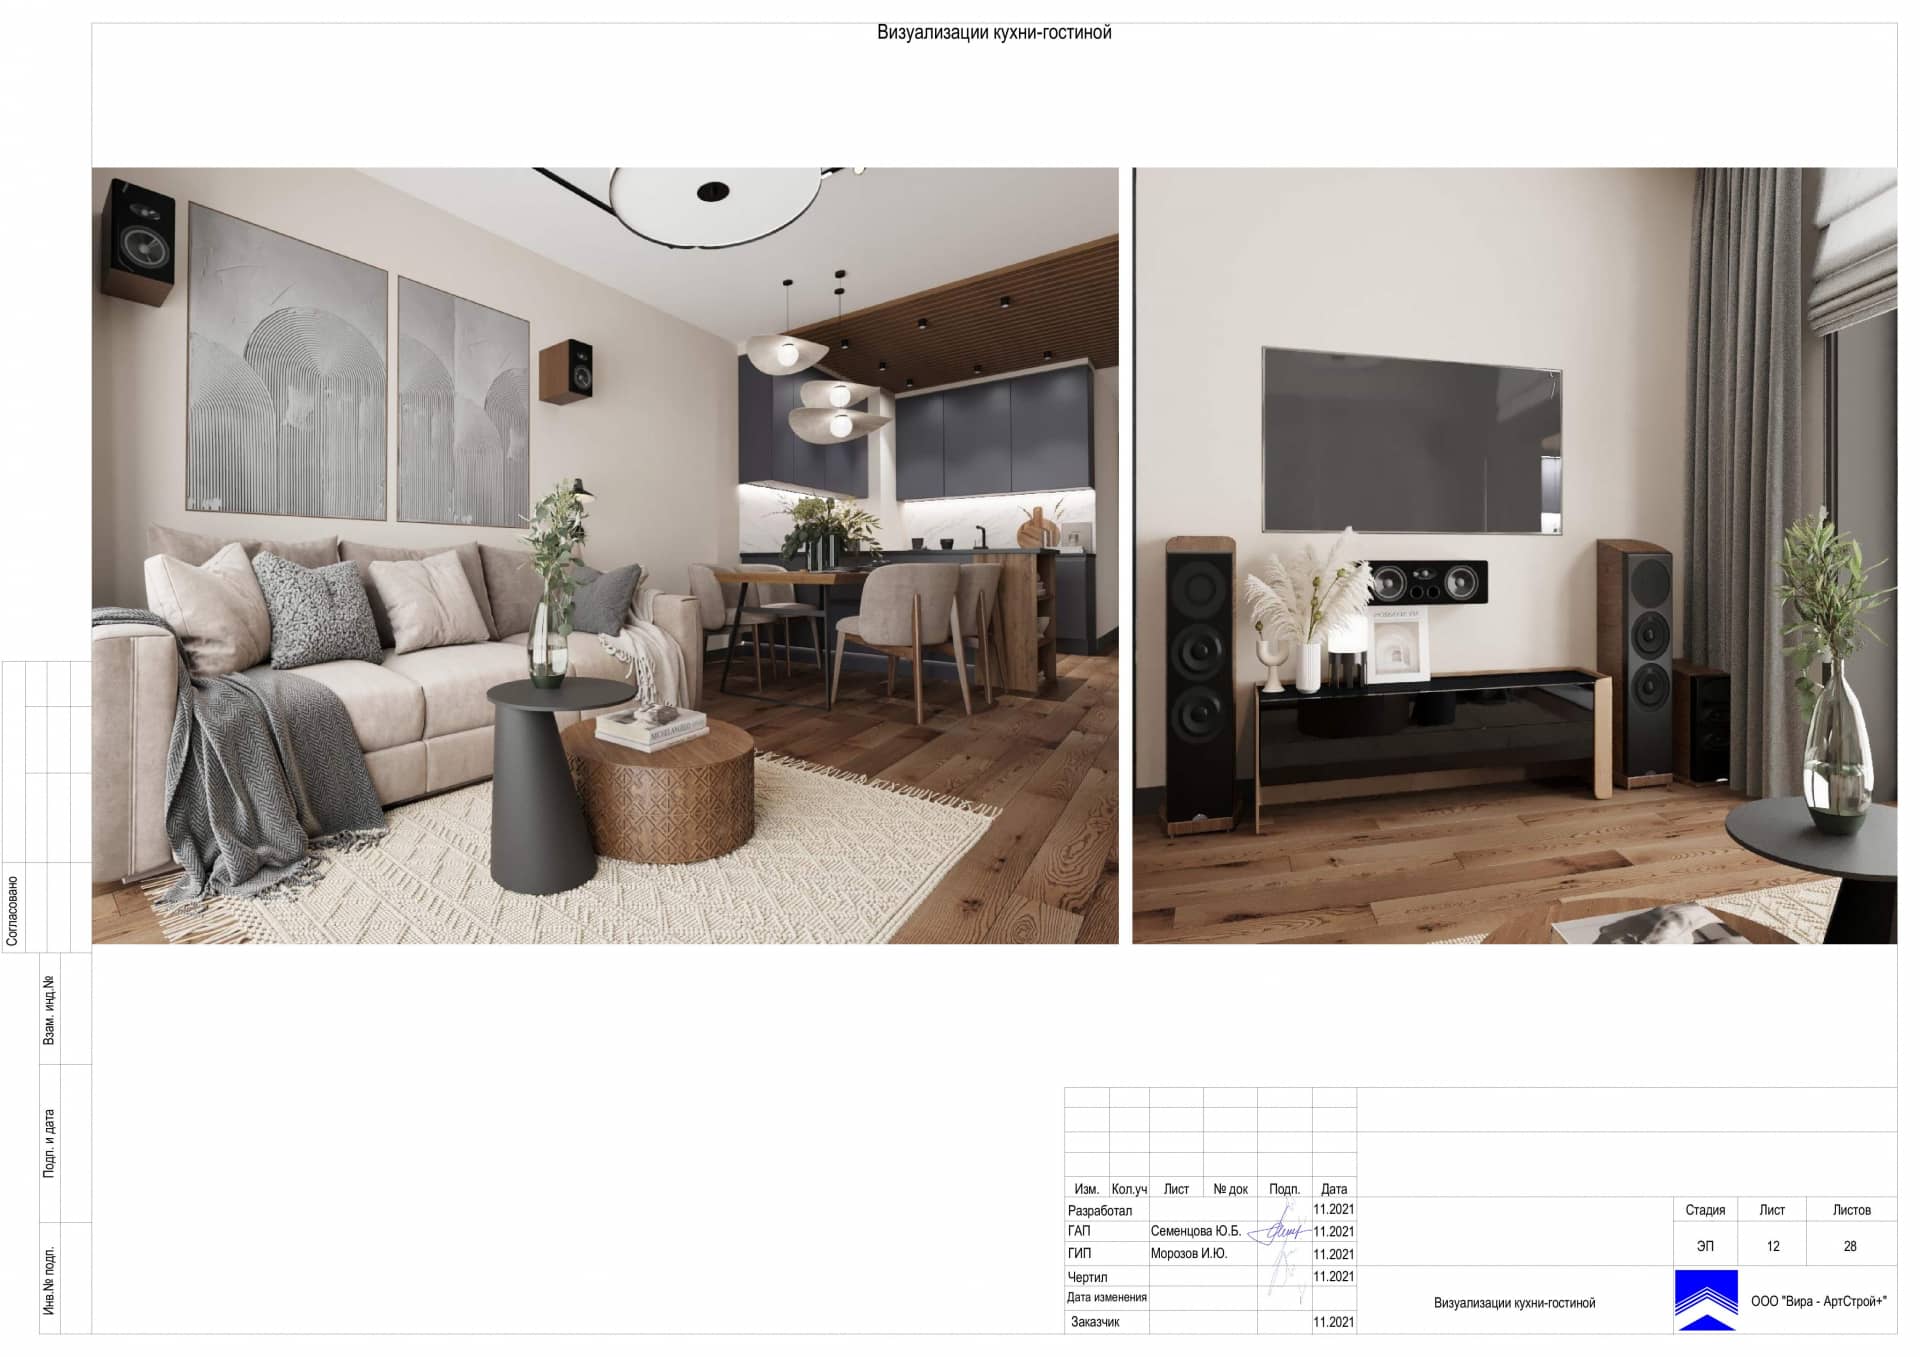 Визуализация кухни гостиной, квартира 100 м² в ЖК «Джаз»